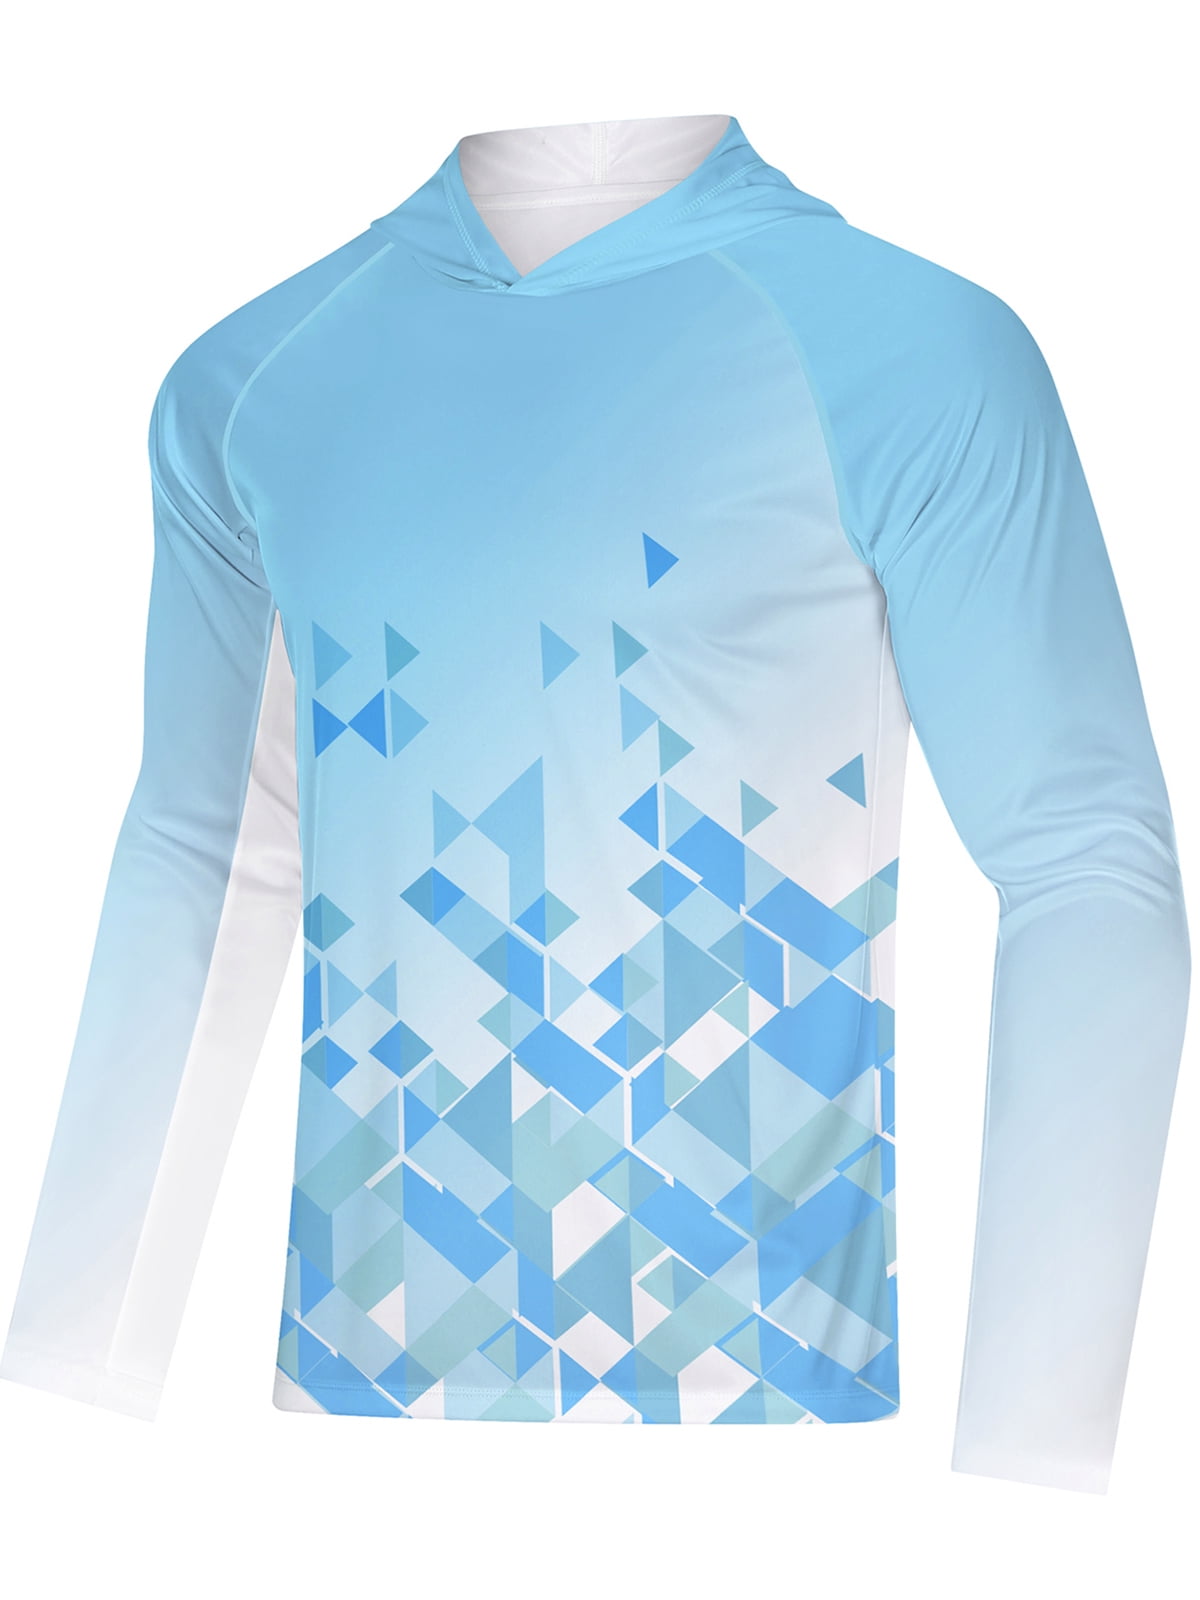 Custom UV Protection Sublimation Long Sleeve Sports Clothing